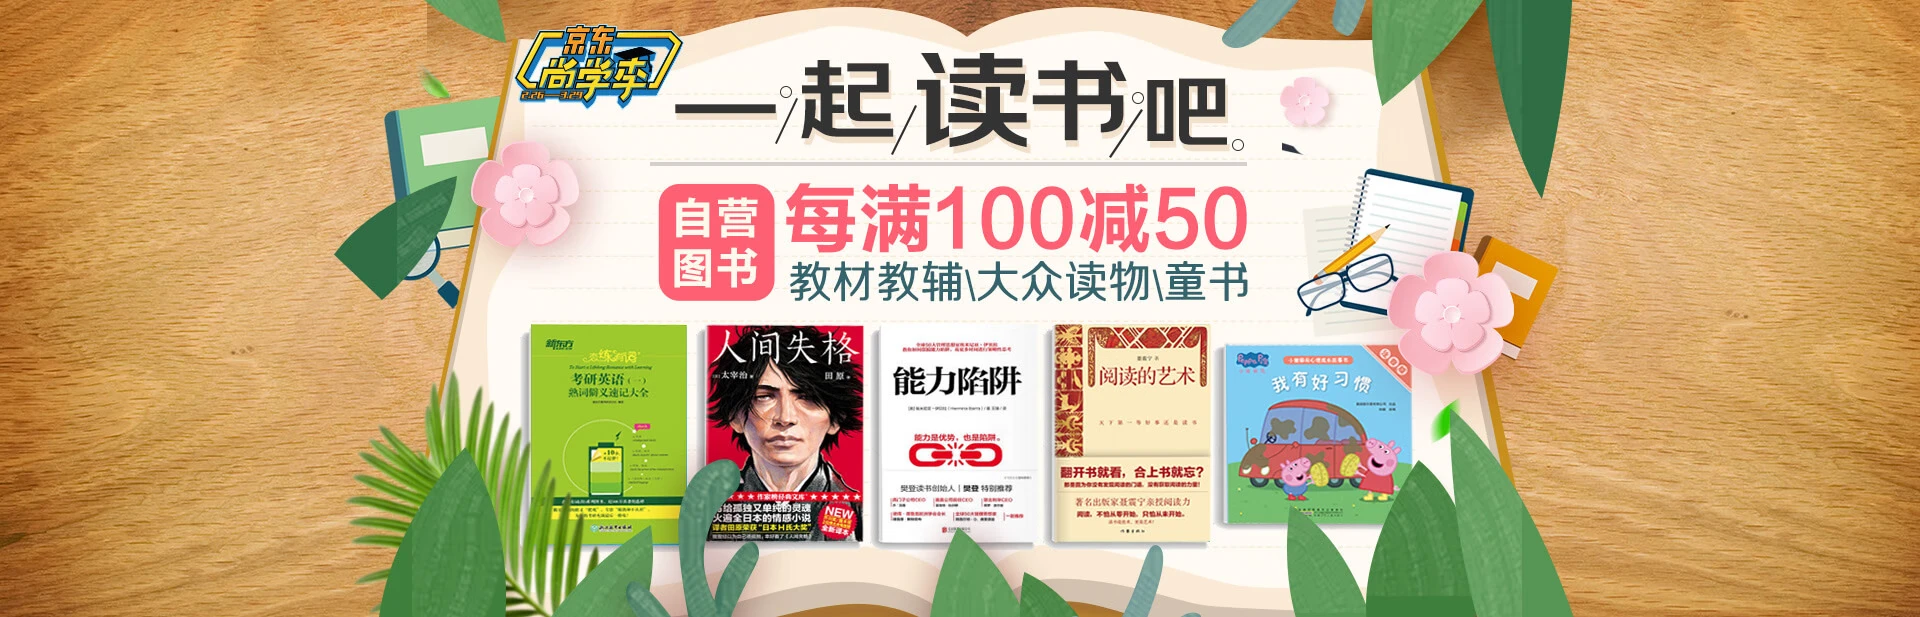 京东商城 图书促销 每满100减50元+叠加满50减20券